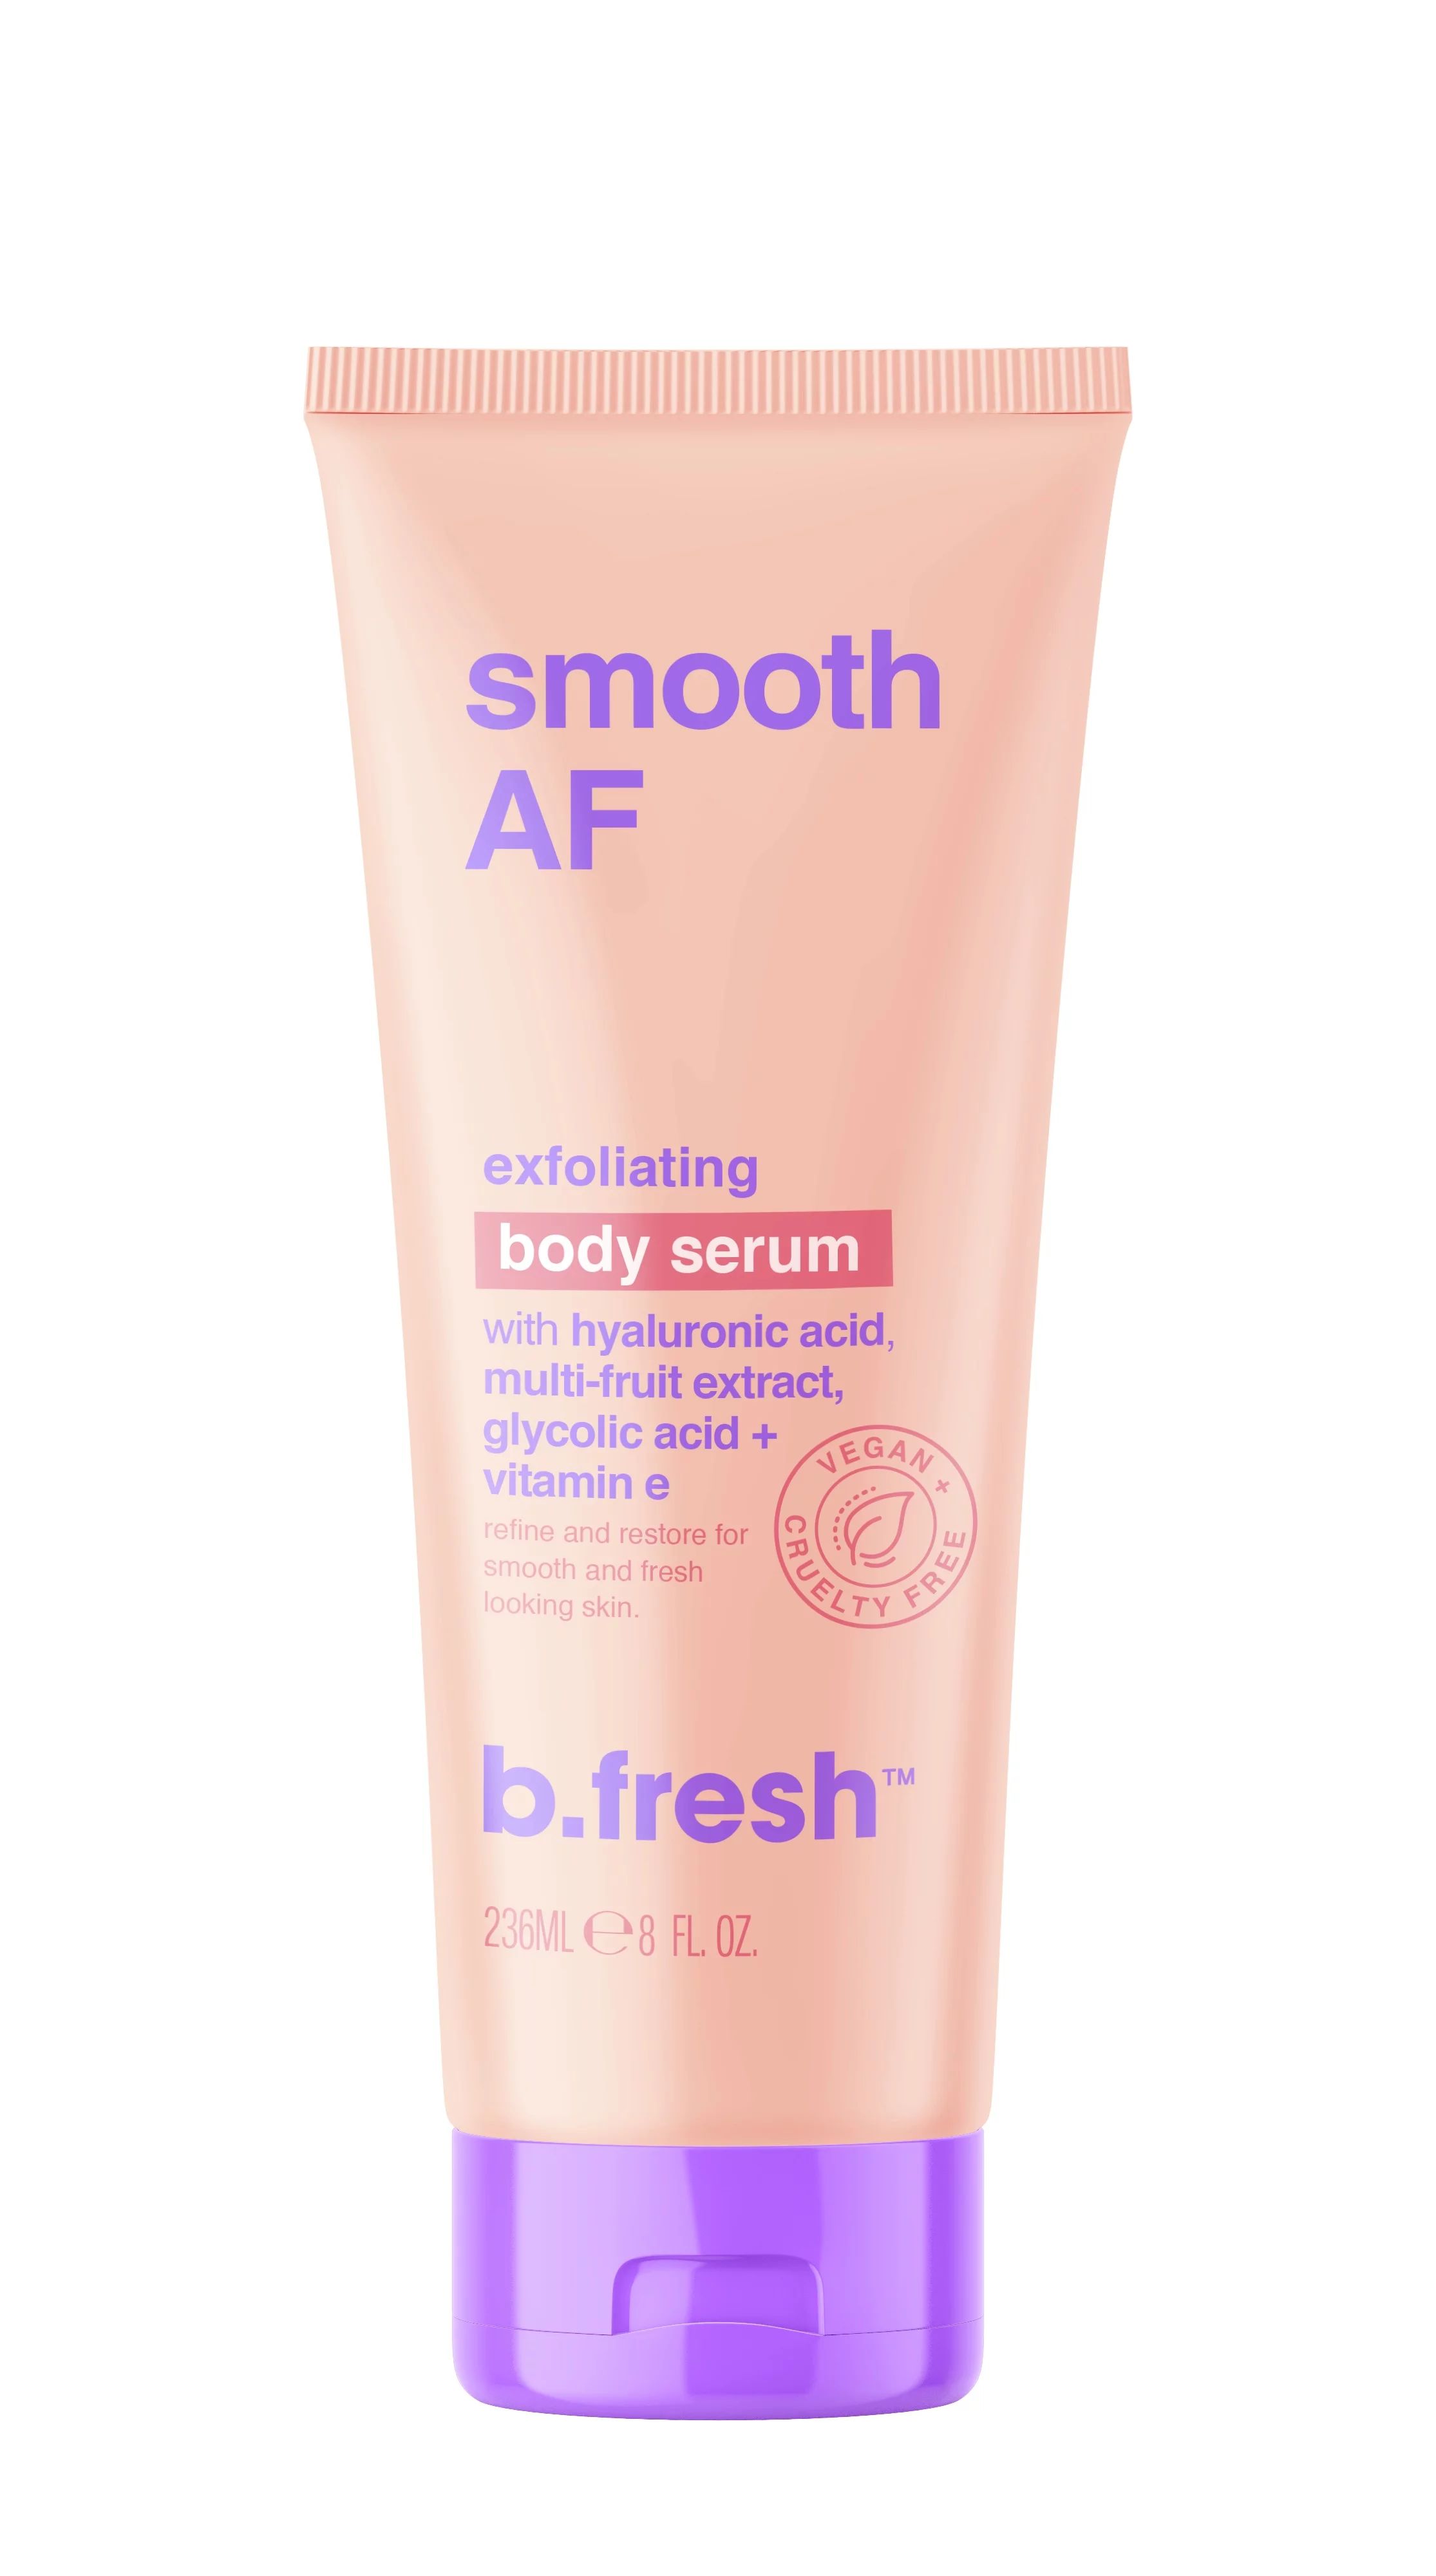 b.fresh smooth AF exfoliating body serum | Walmart (US)